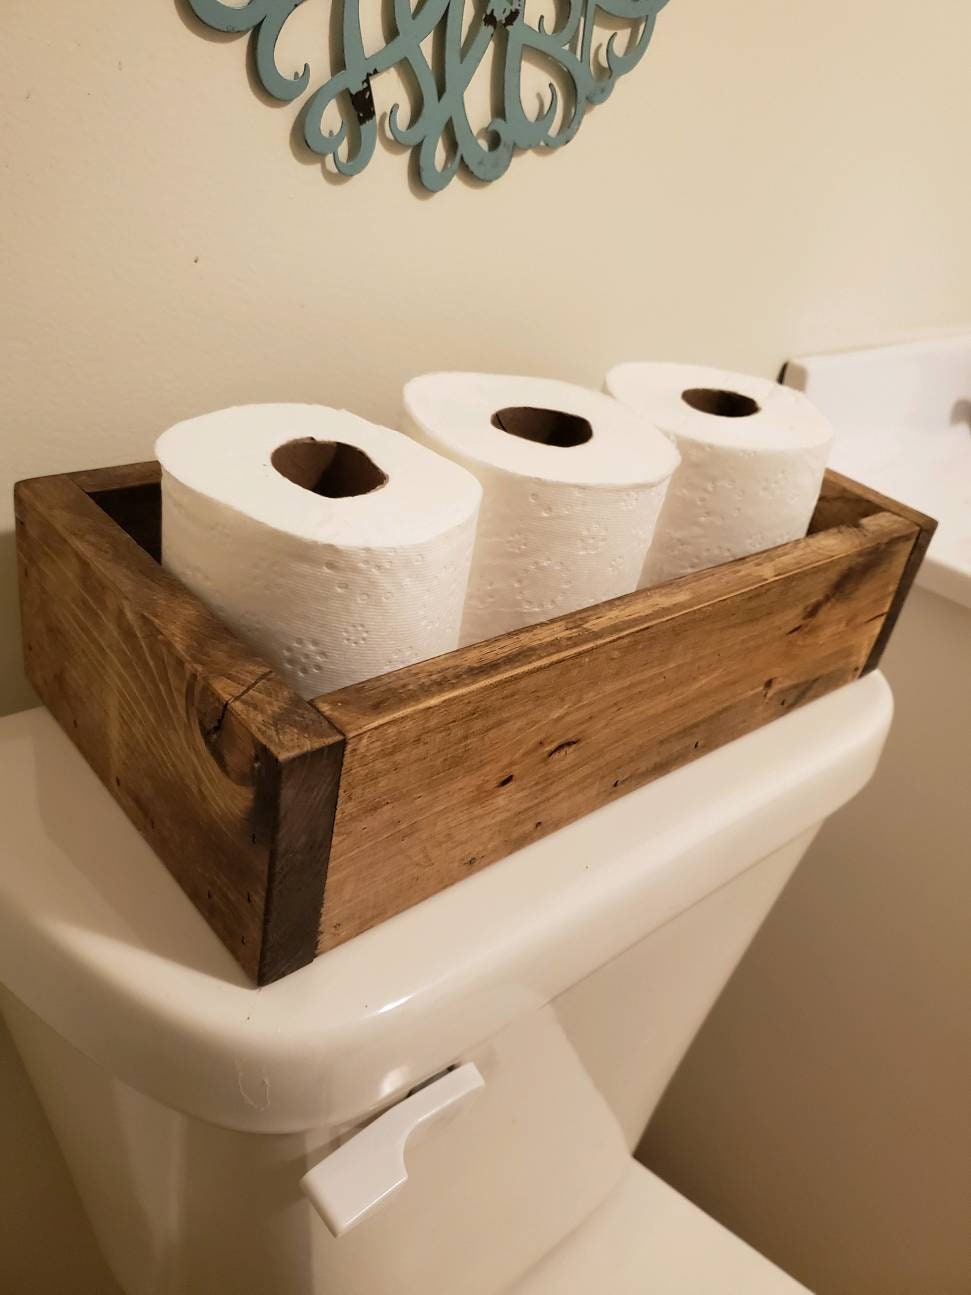 Farmhouse Toilet Paper Holder Bathroom Decor, Toilet Paper Storage